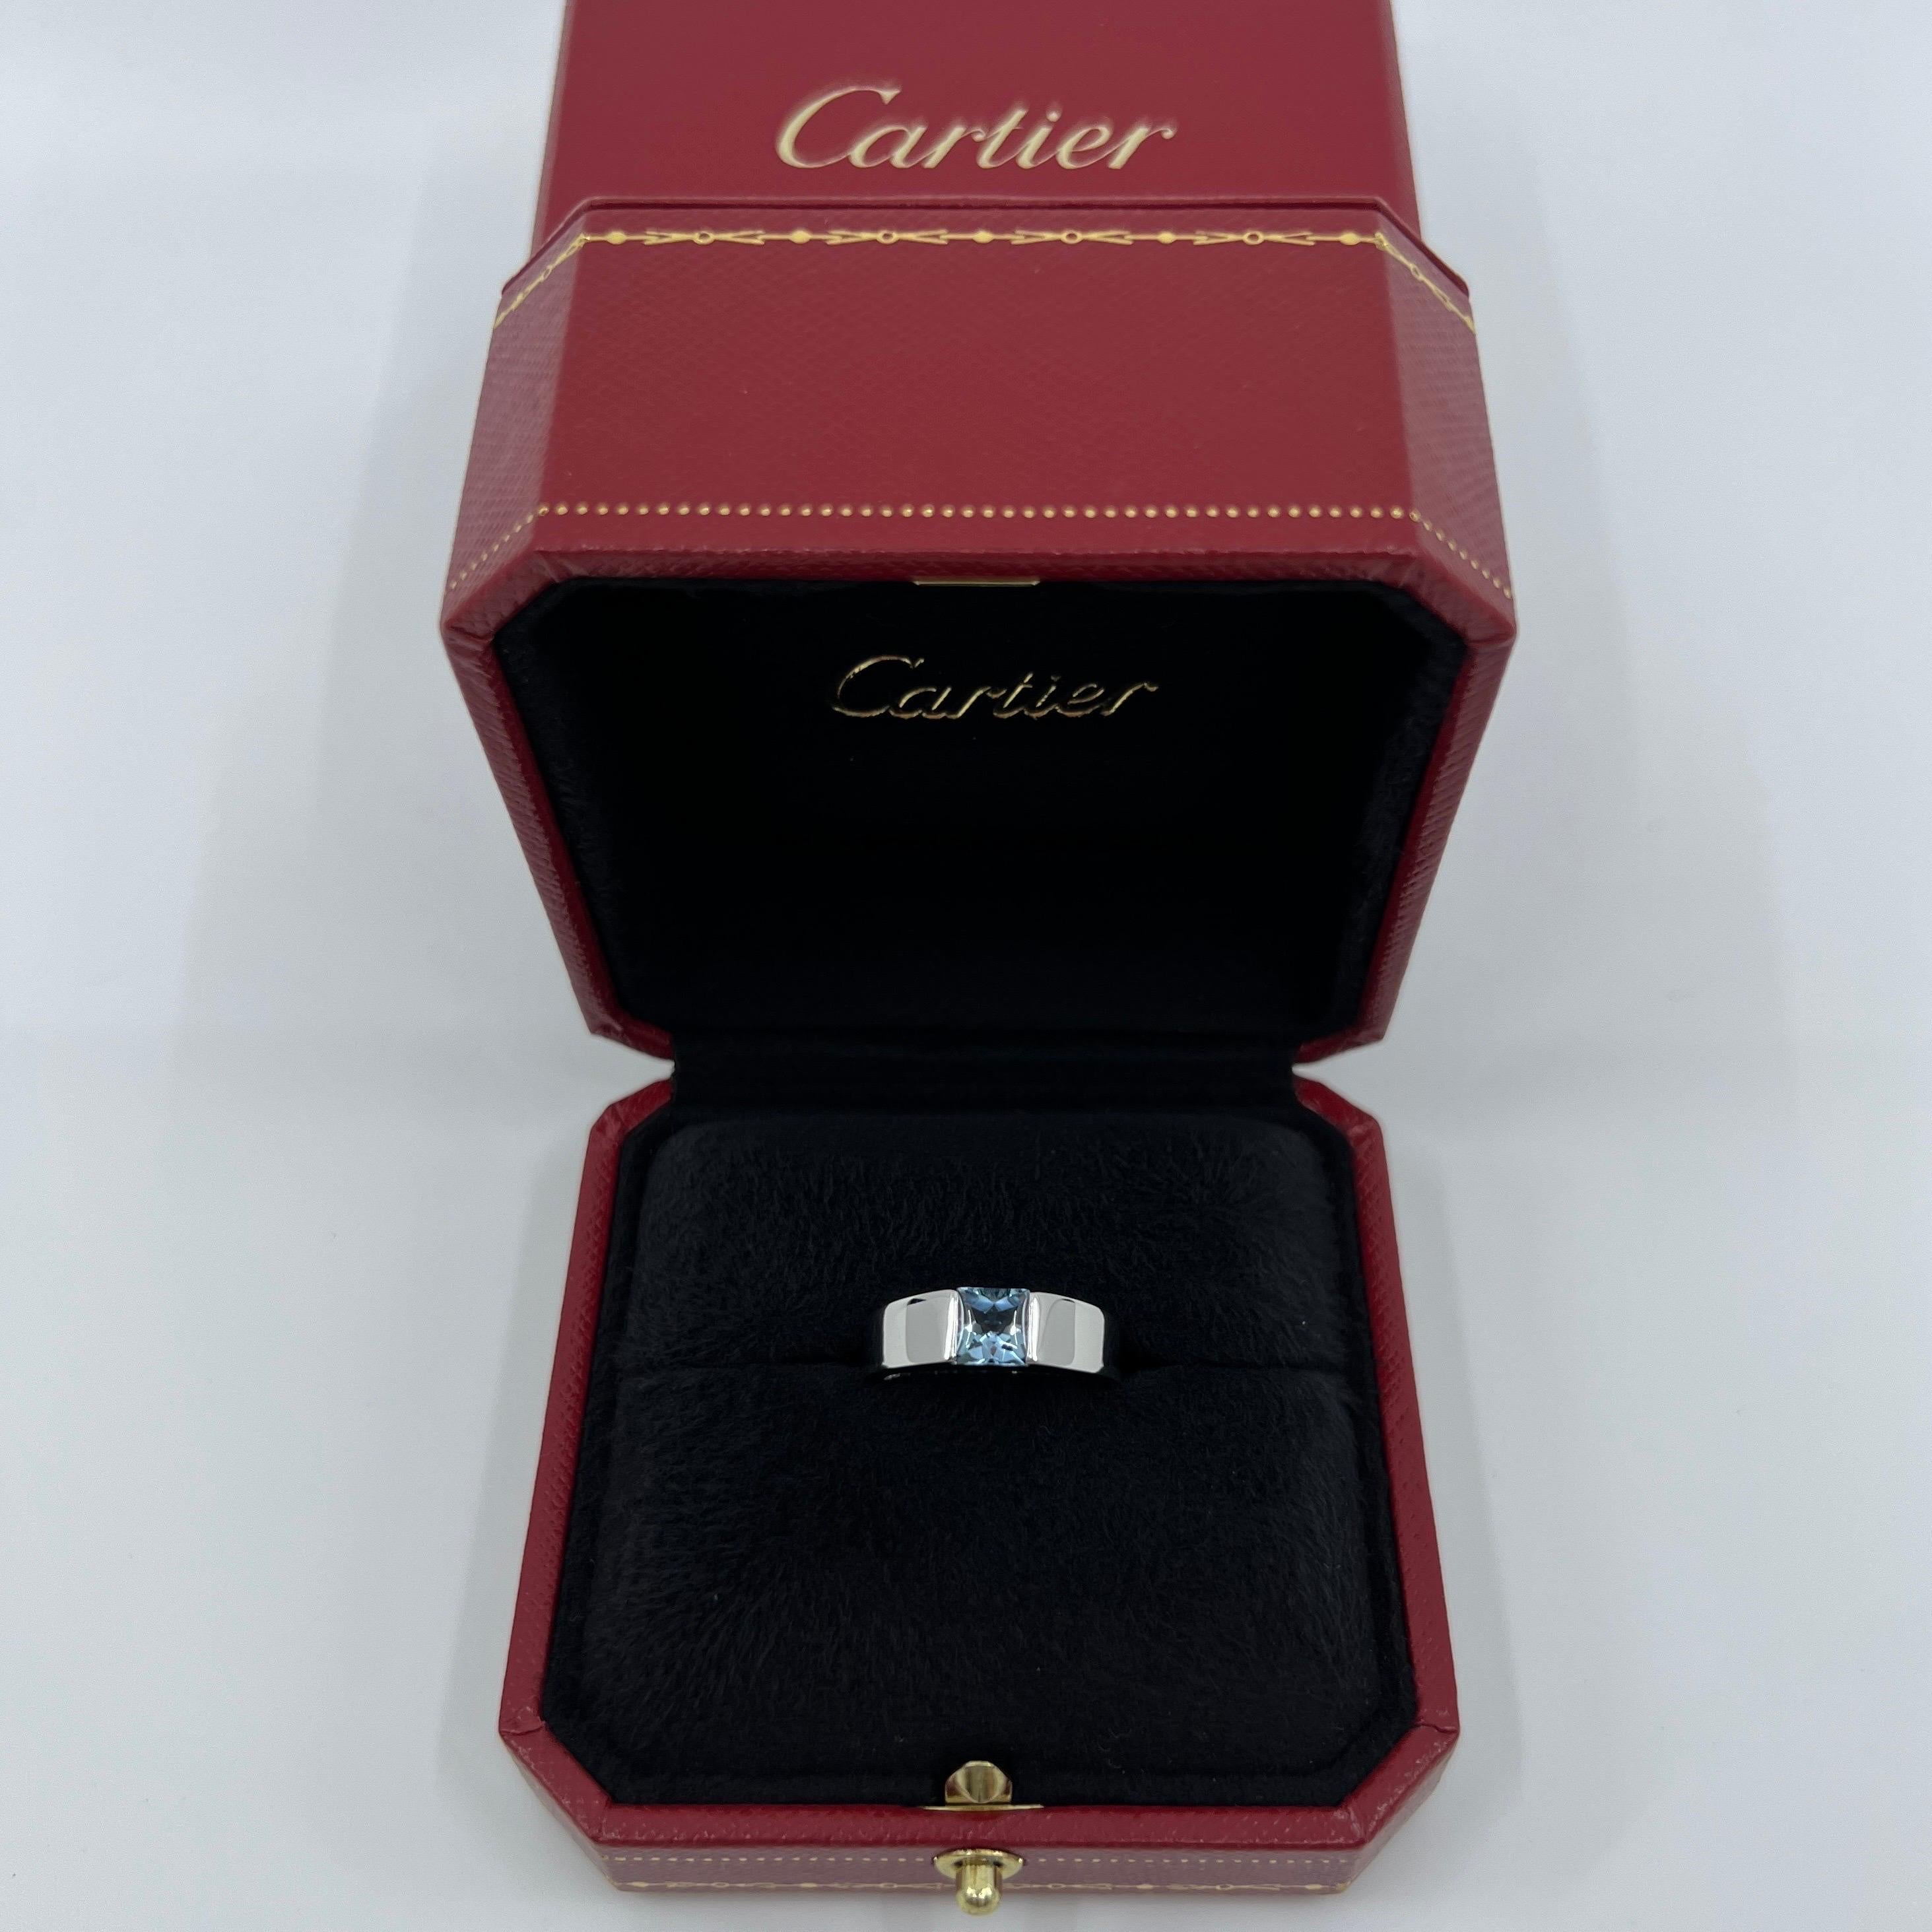 Cartier Deep Blue Aquamarine Square Cushion Cut 18k White Gold Tank Ring 51 5.5 2